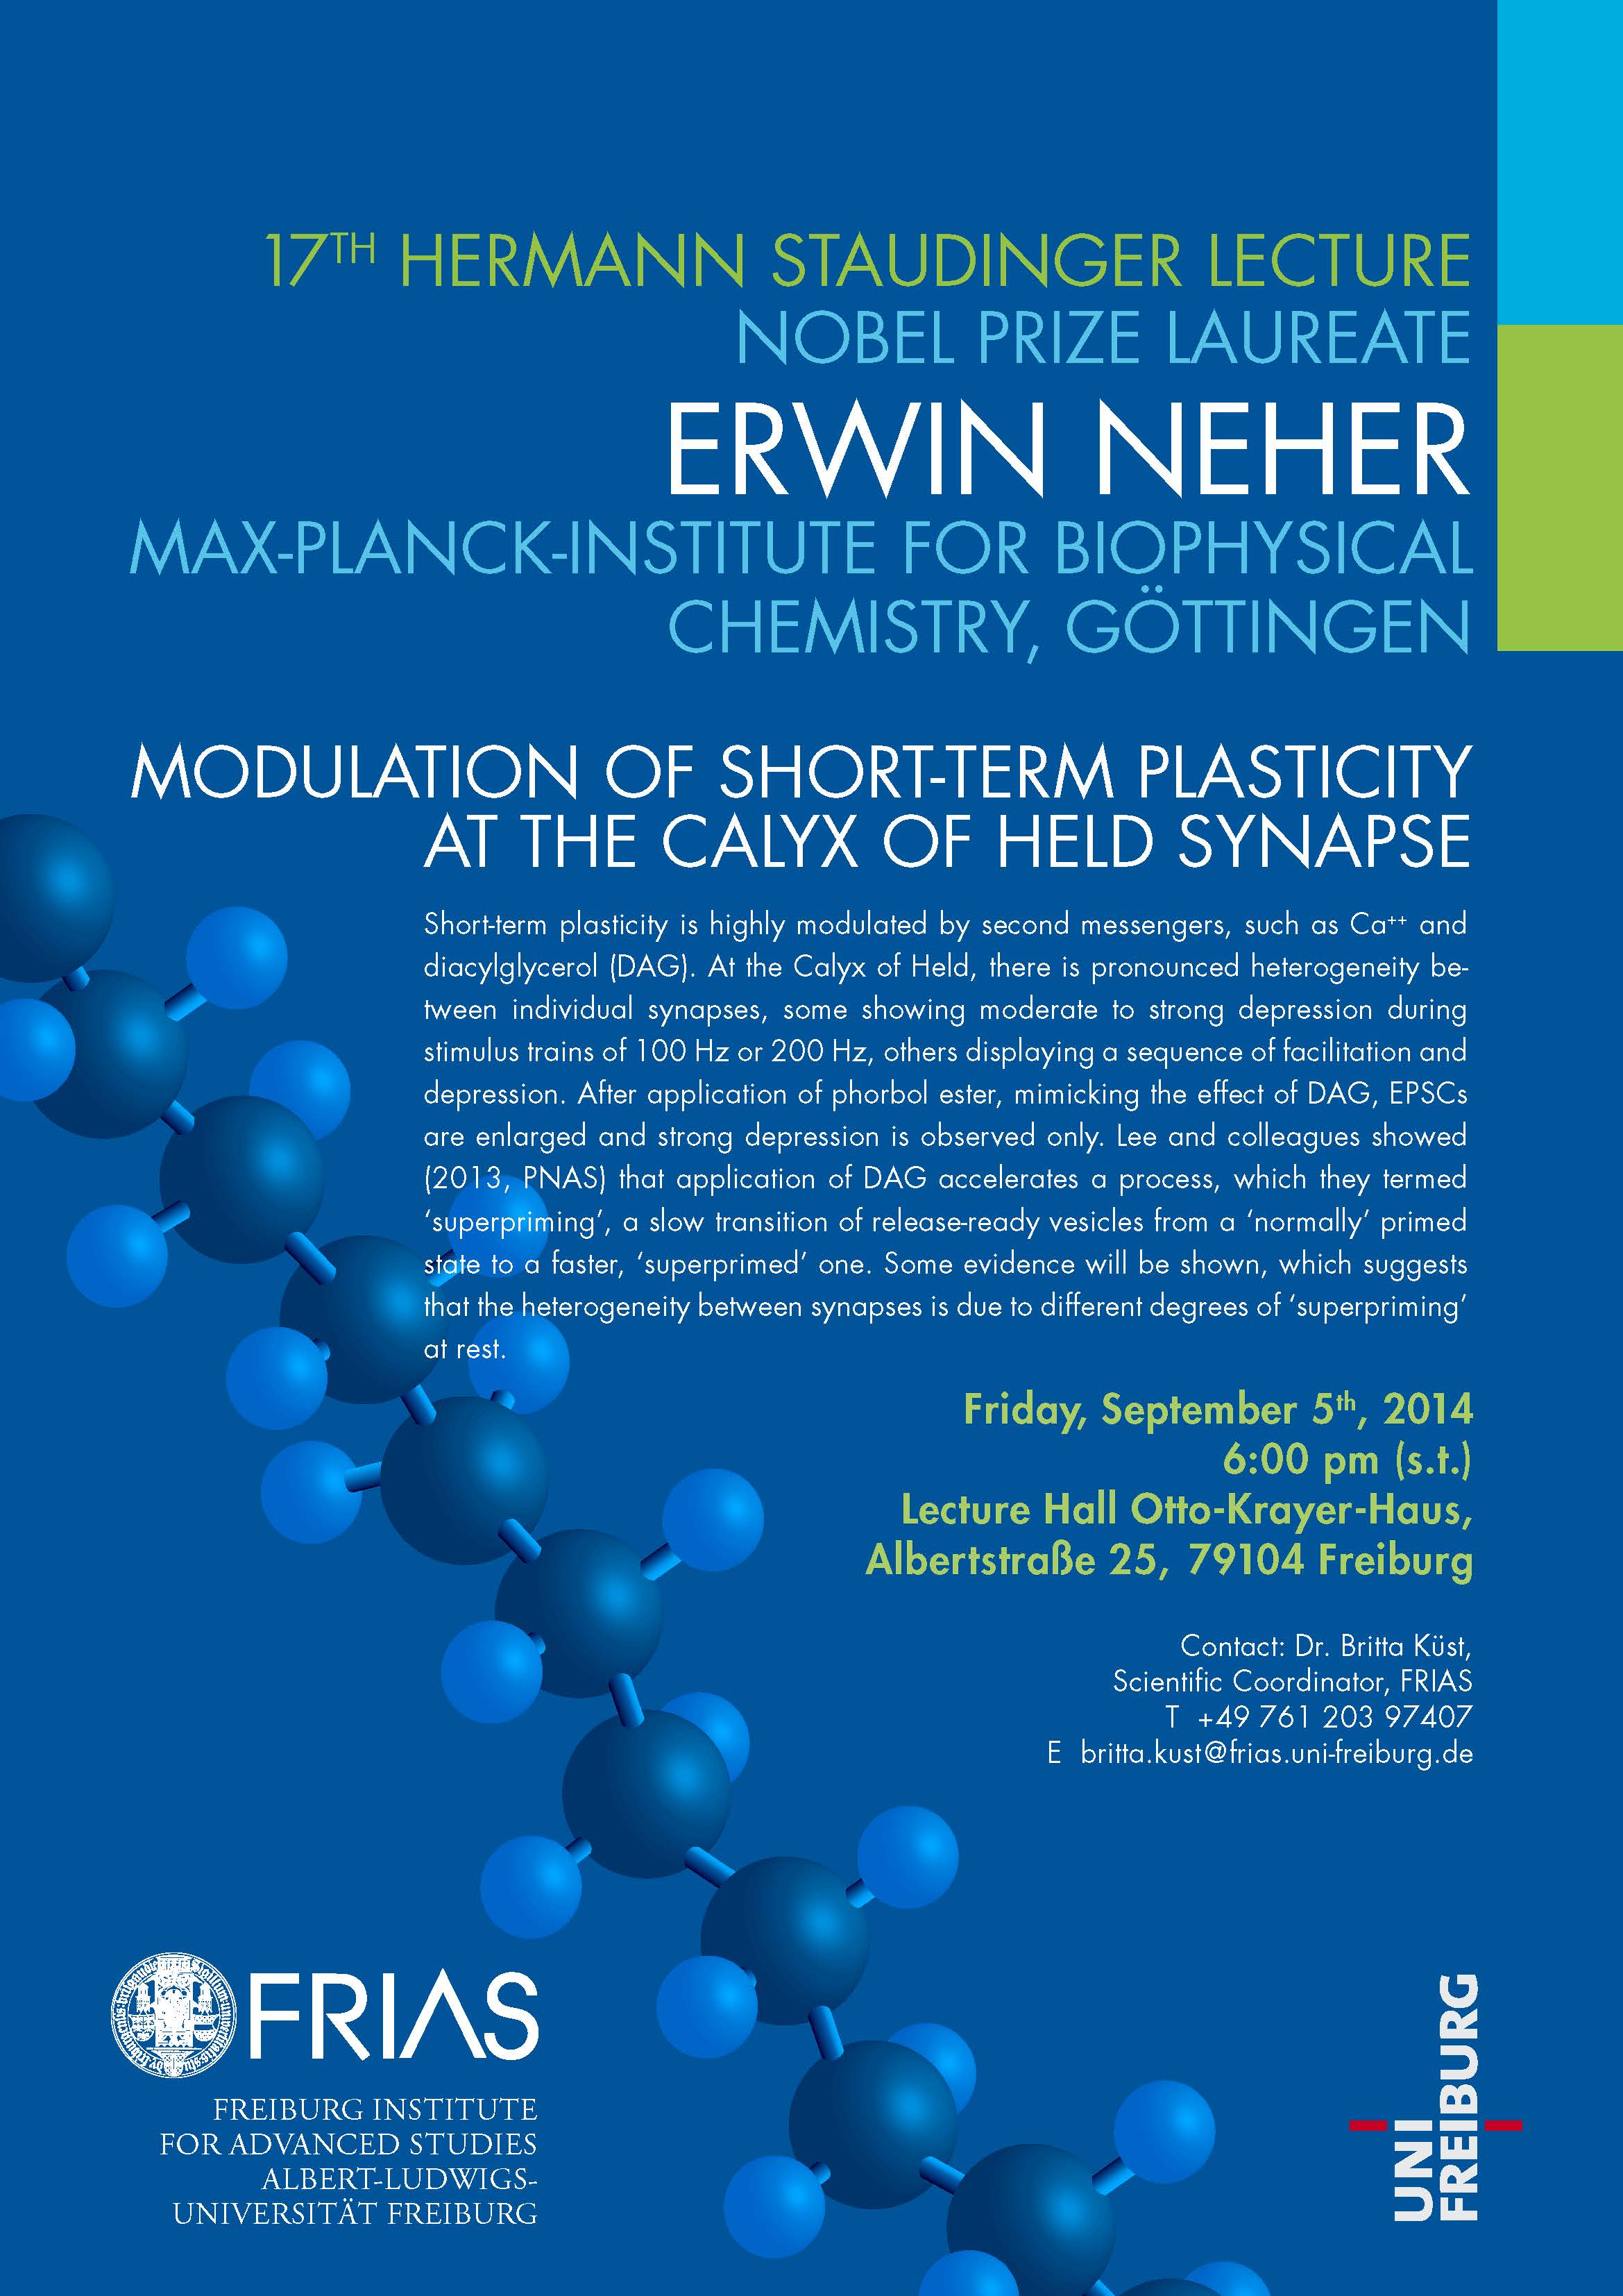 17. Hermann Staudinger Lecture mit Nobelpreisträger Erwin Neher am 5. September 2014 